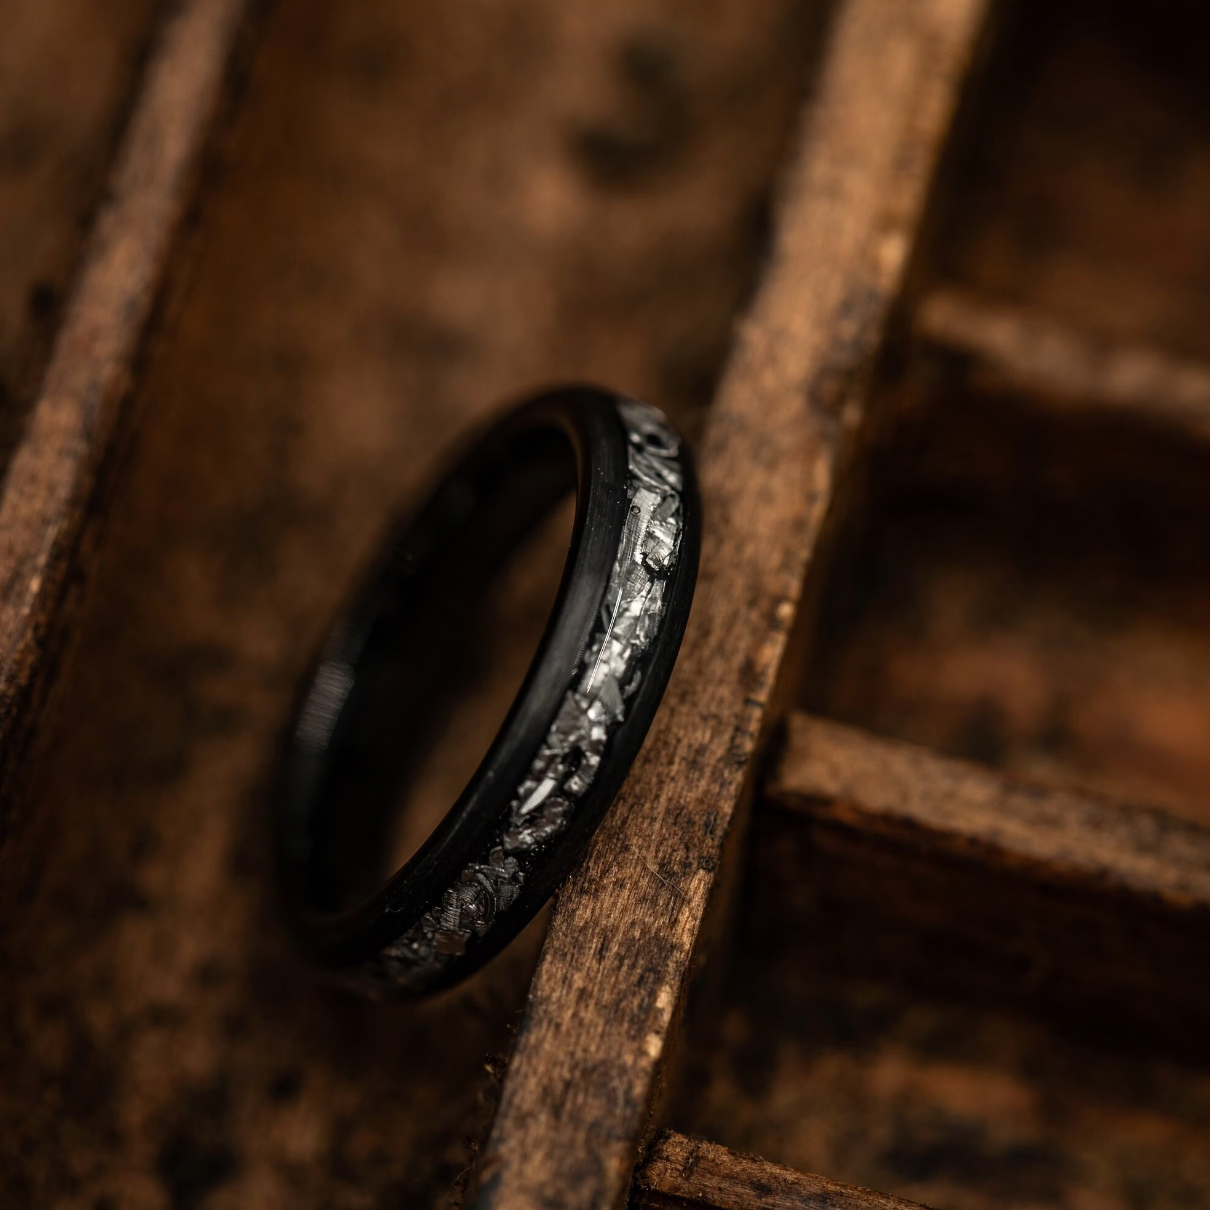 Buy His and Hers Wedding Bands Meteorite Ring Meteorite Wedding Rings  Online in India - Etsy